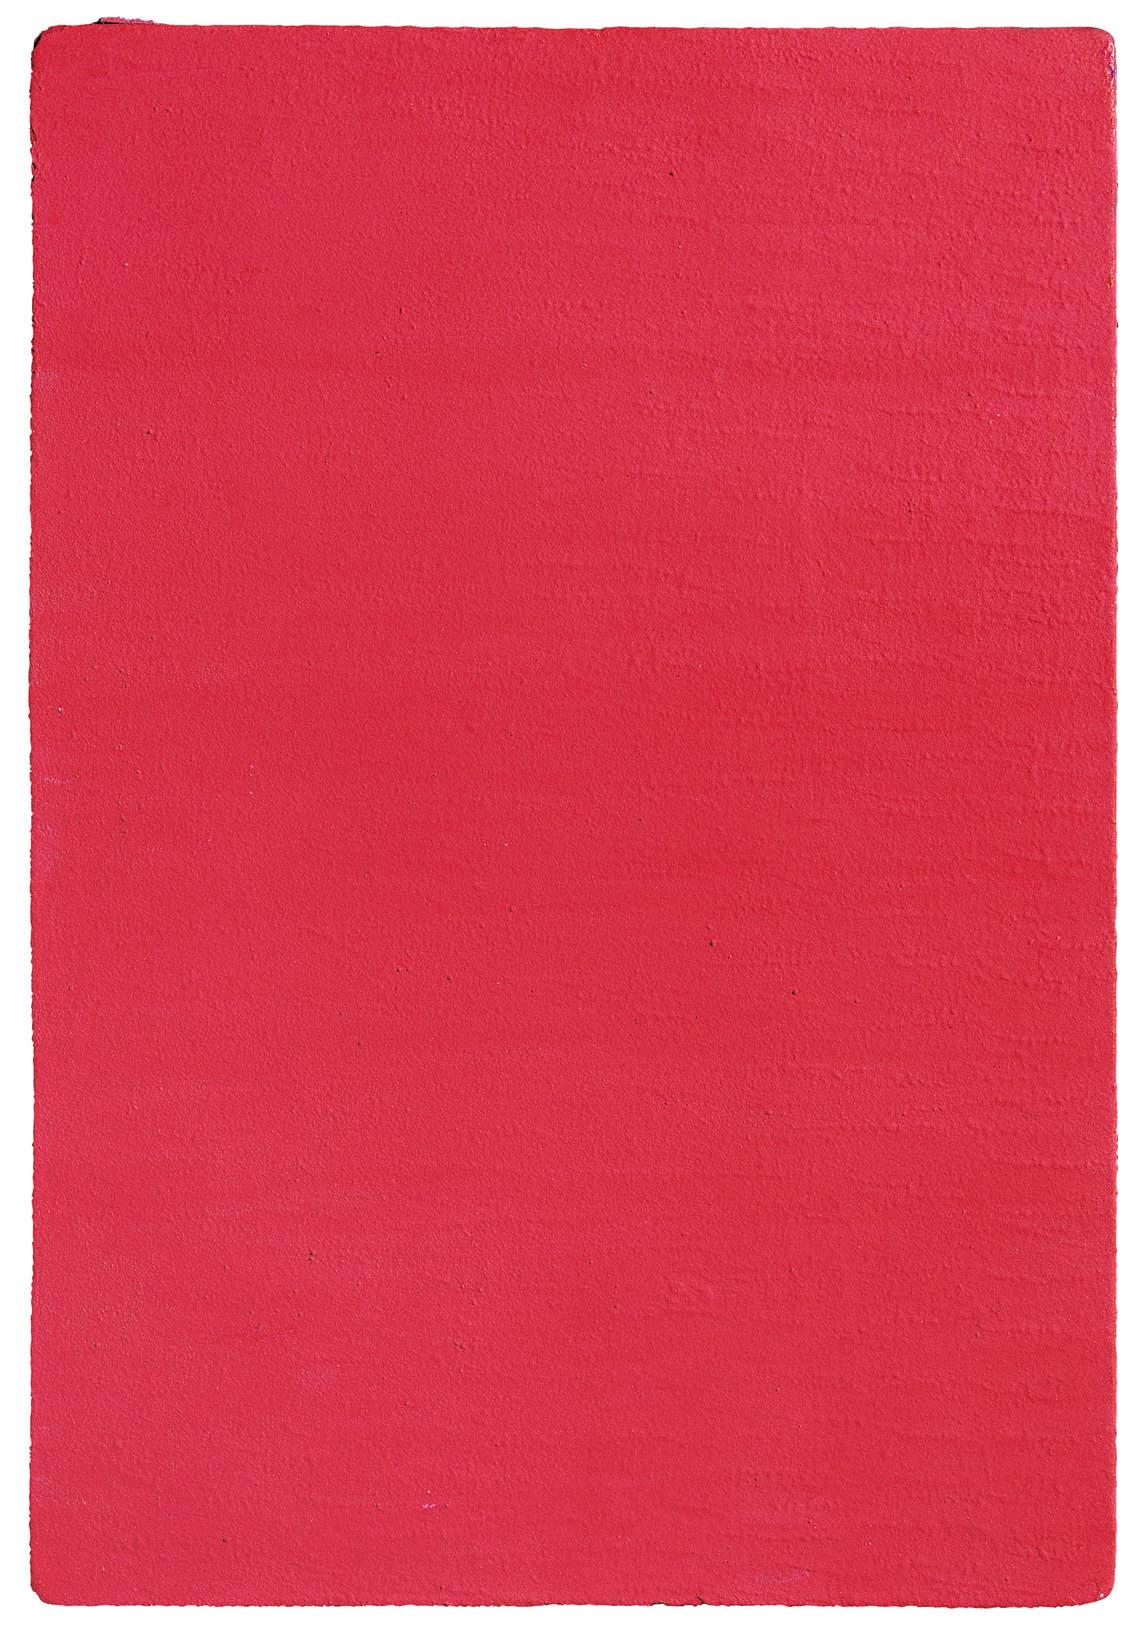 イヴ・クライン《無題（薔薇色のモノクローム）》（1957年、個人蔵 © The Estate of Yves Klein c/o ADAGP, Paris）。彼は青や薔薇色の他にもさまざまな色によるモノクローム（単色）絵画を制作している。